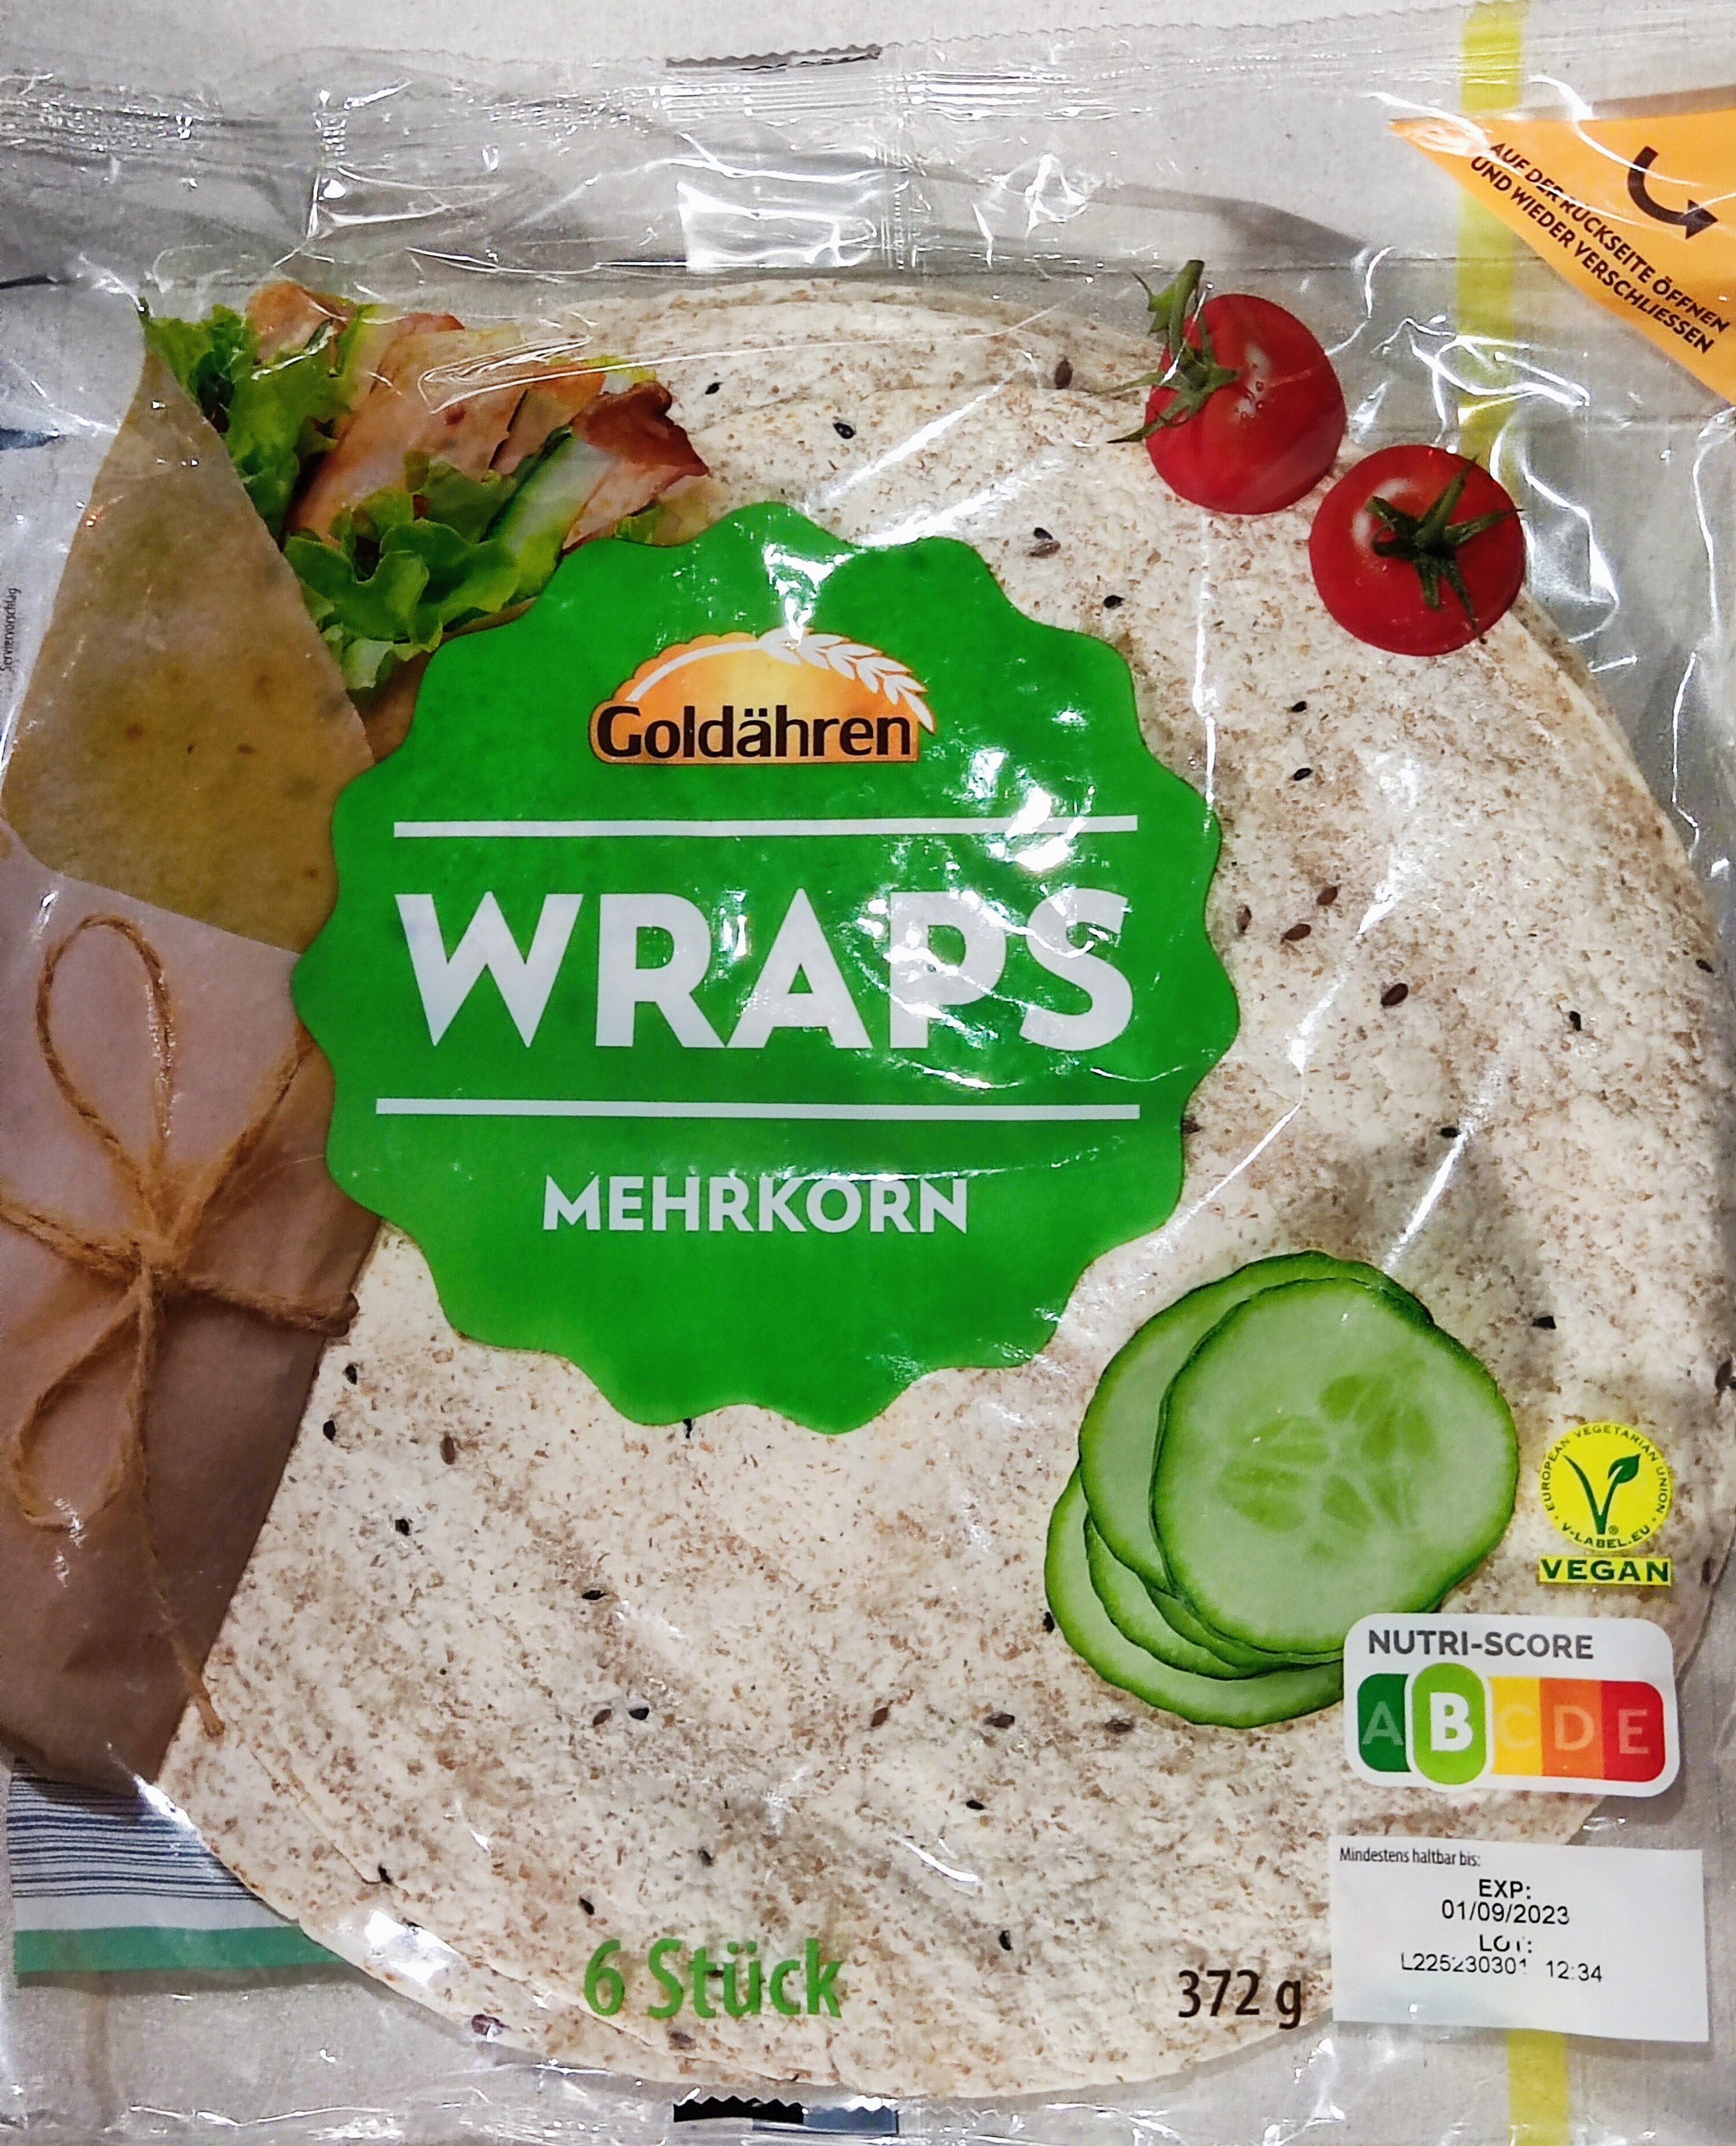 Wraps - Mehrkorn - Product - de